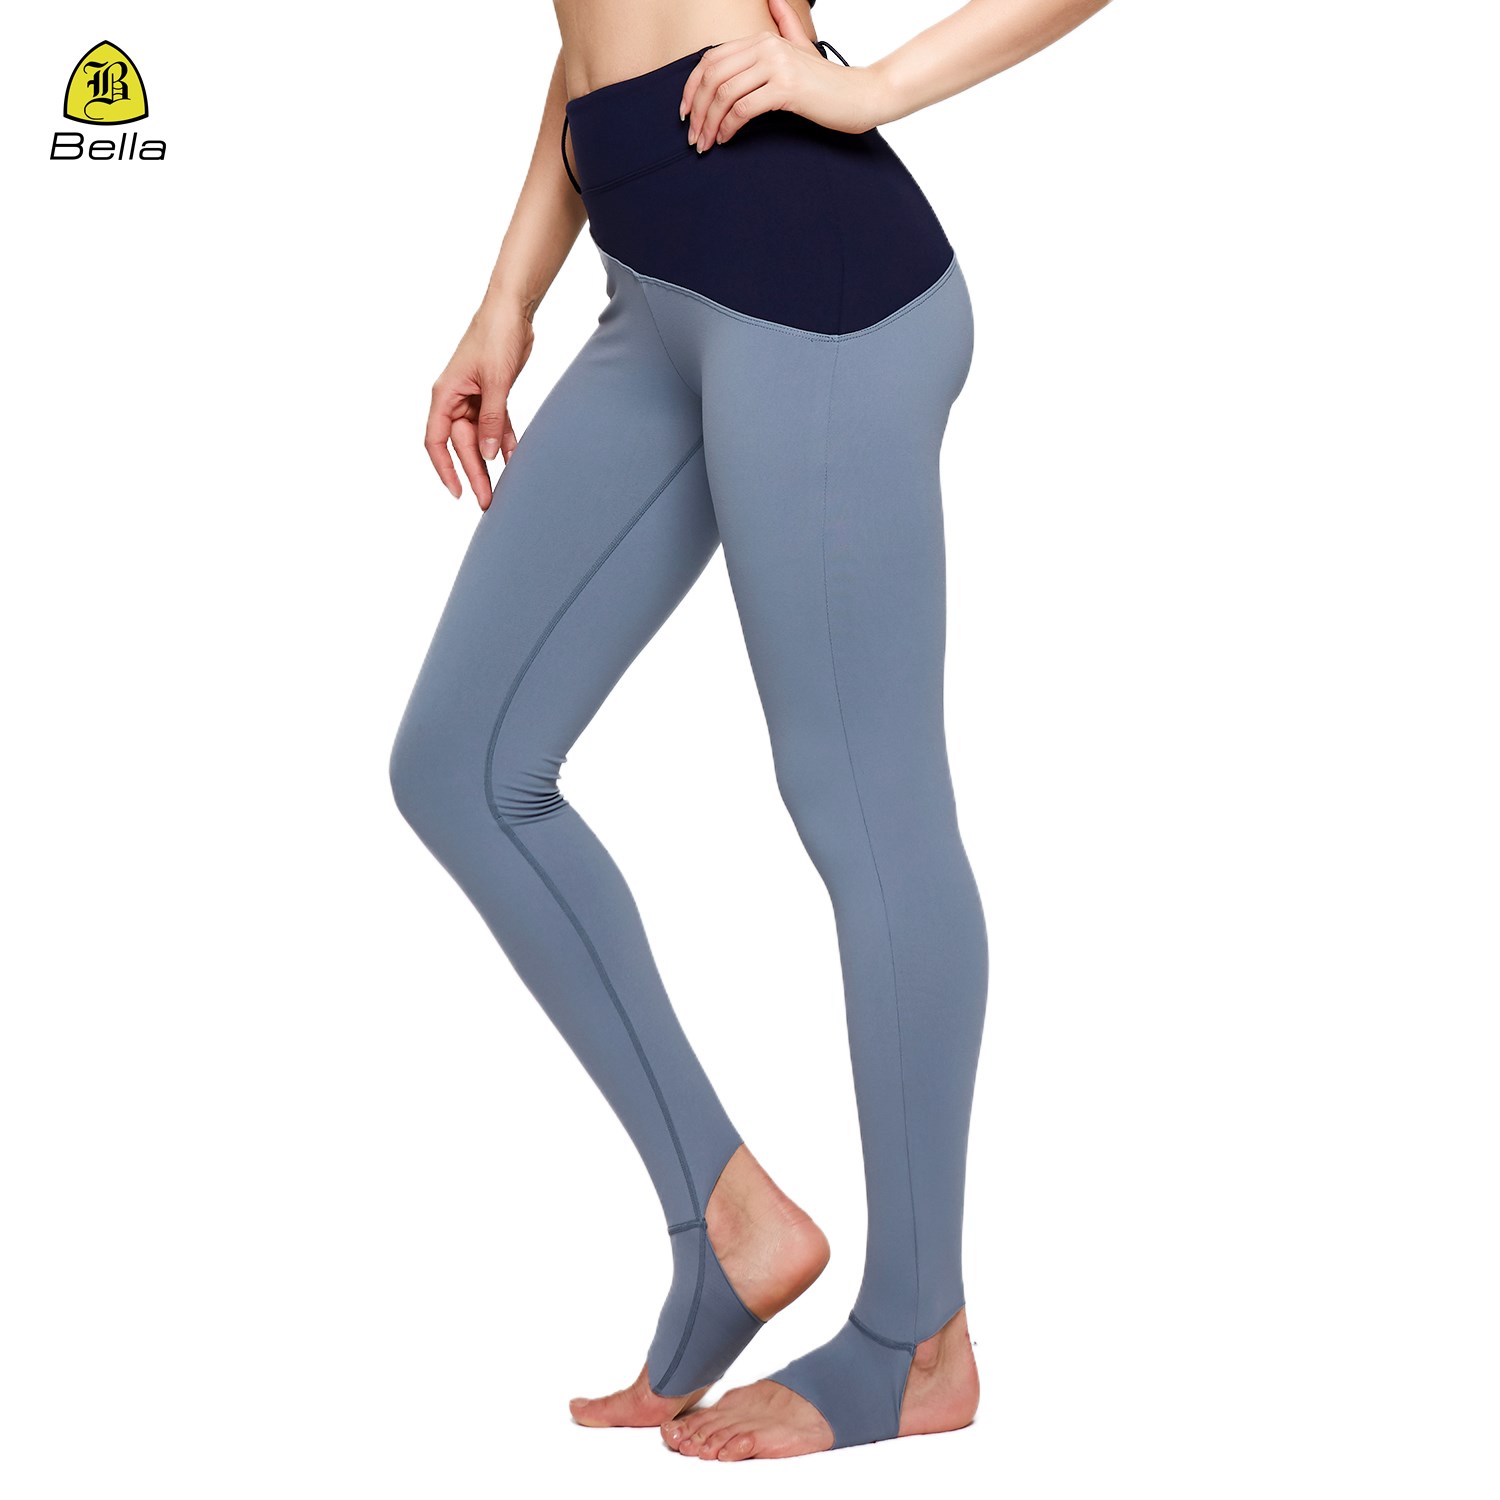 Pantalones de yoga de compresión suave y cómodos con diseño de hebilla de cinturón